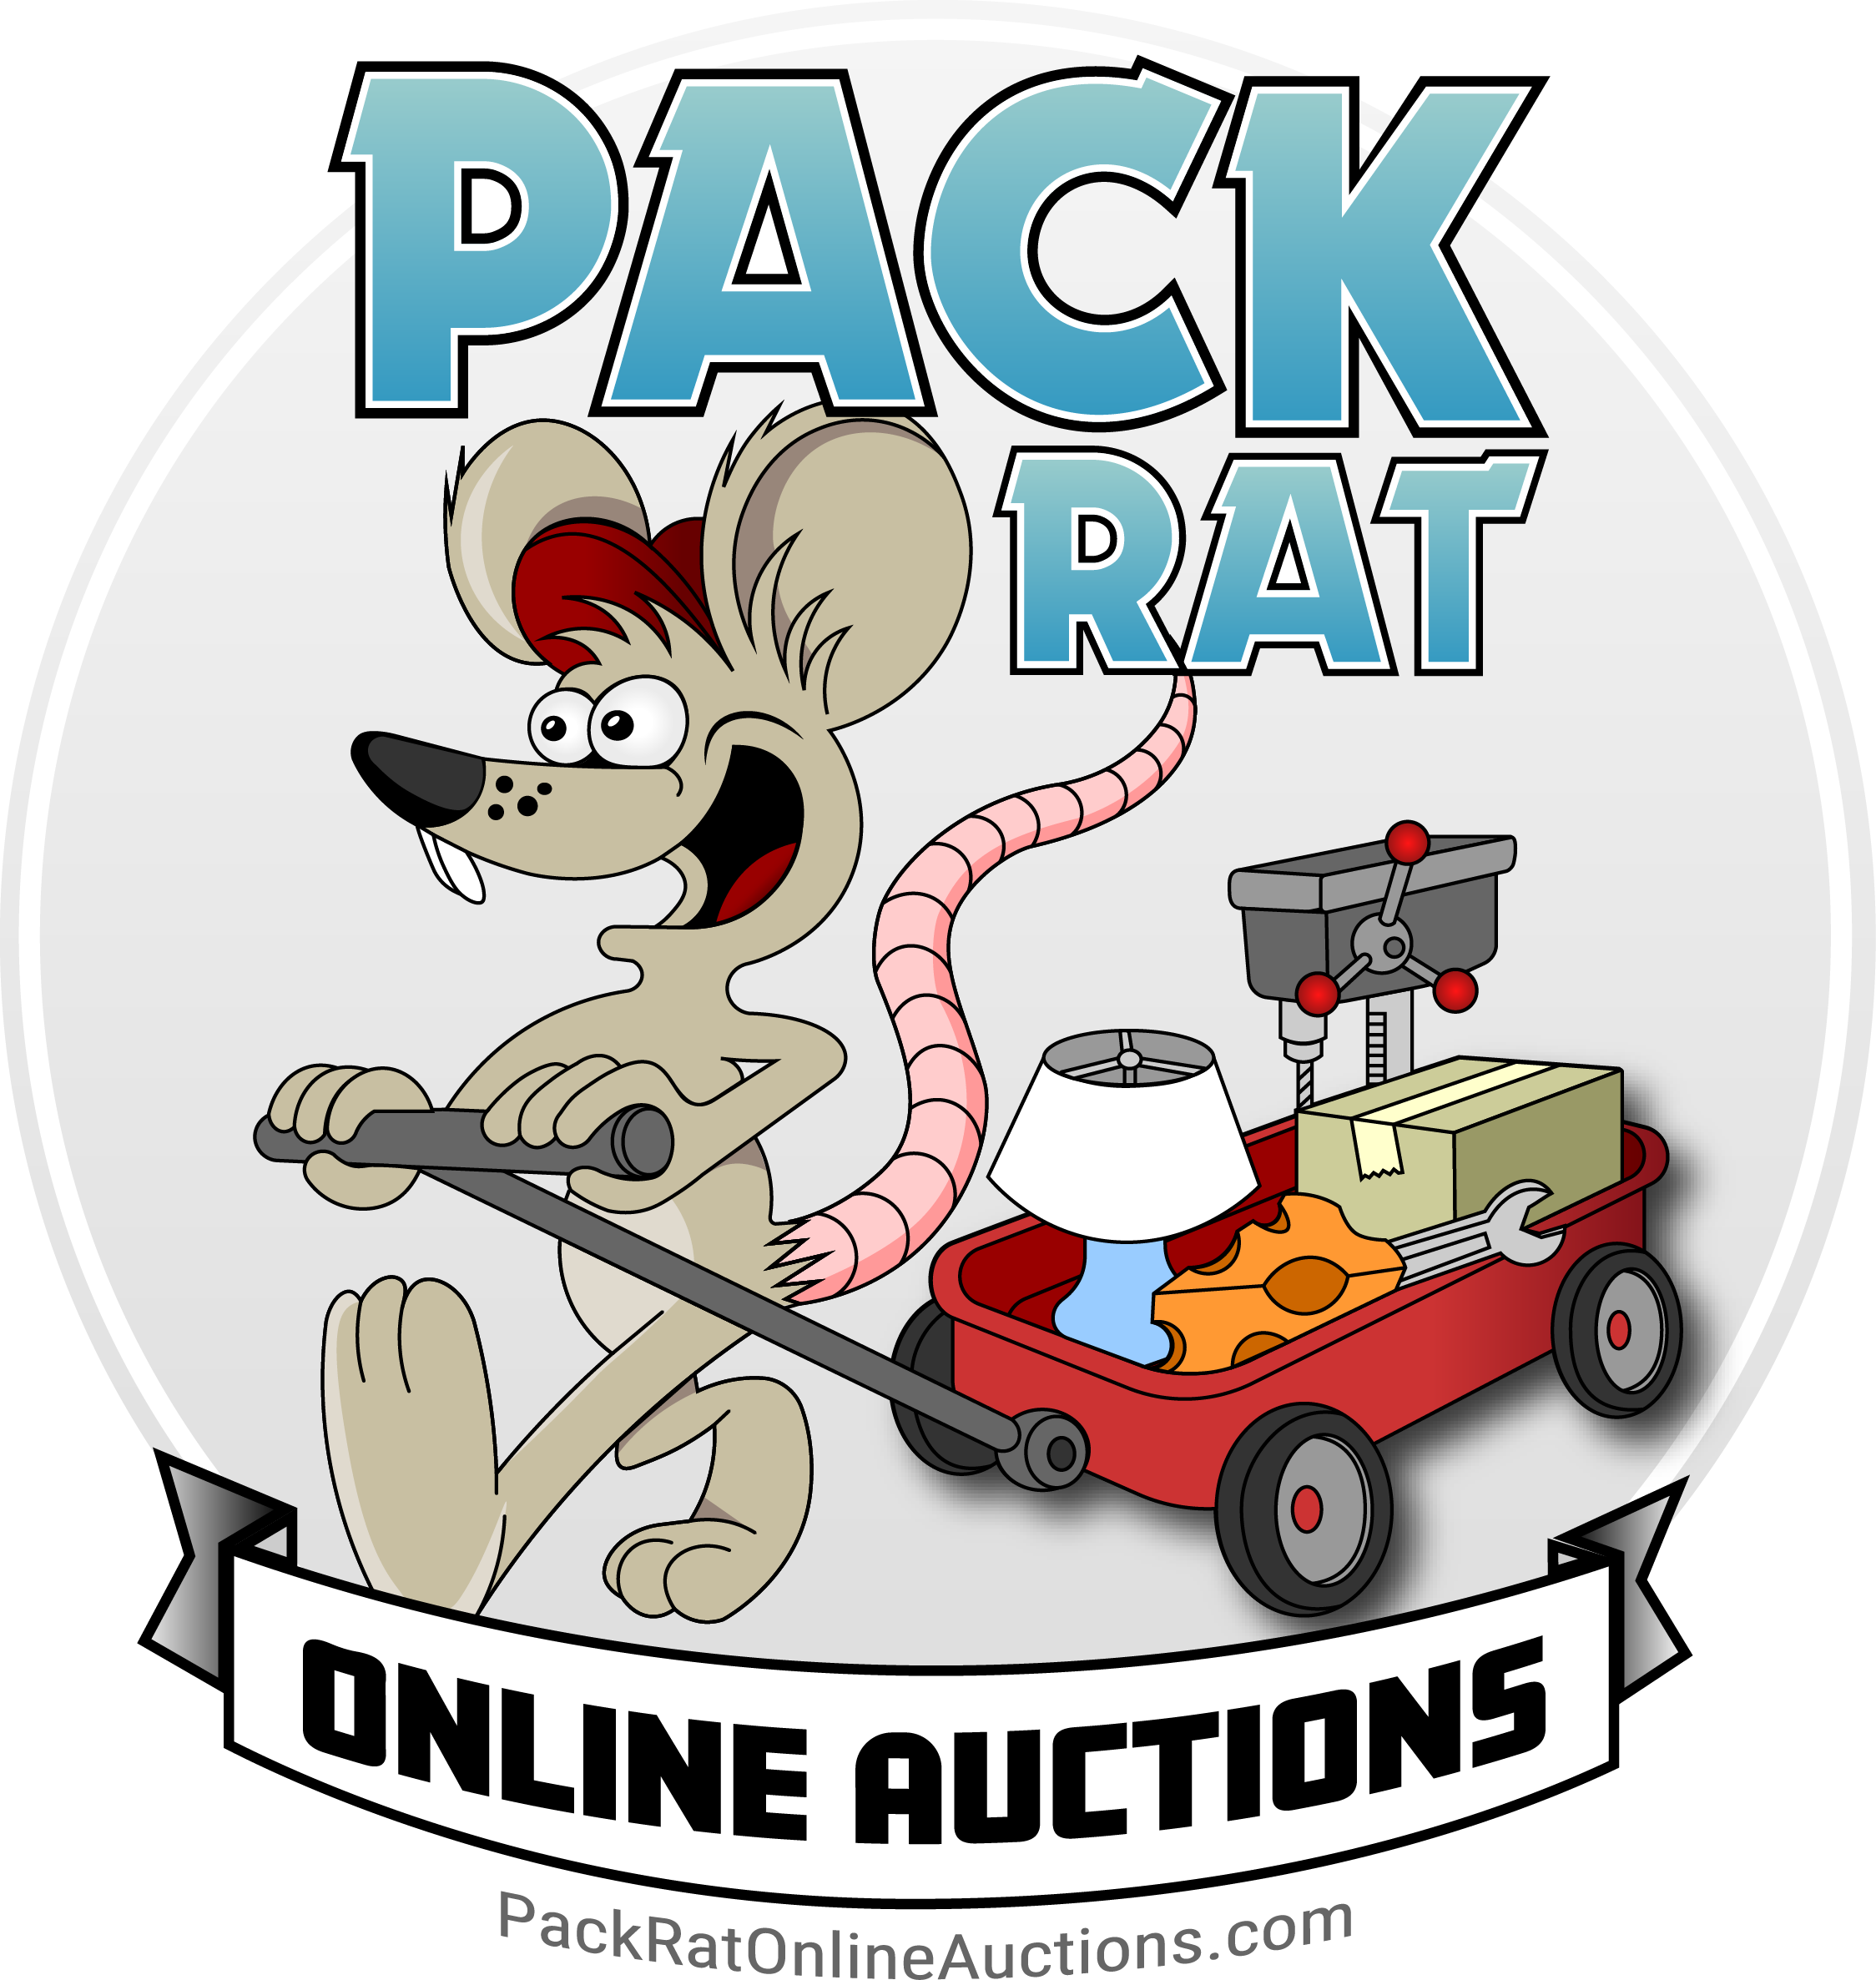 Online auctions image. Rat clipart pack rat